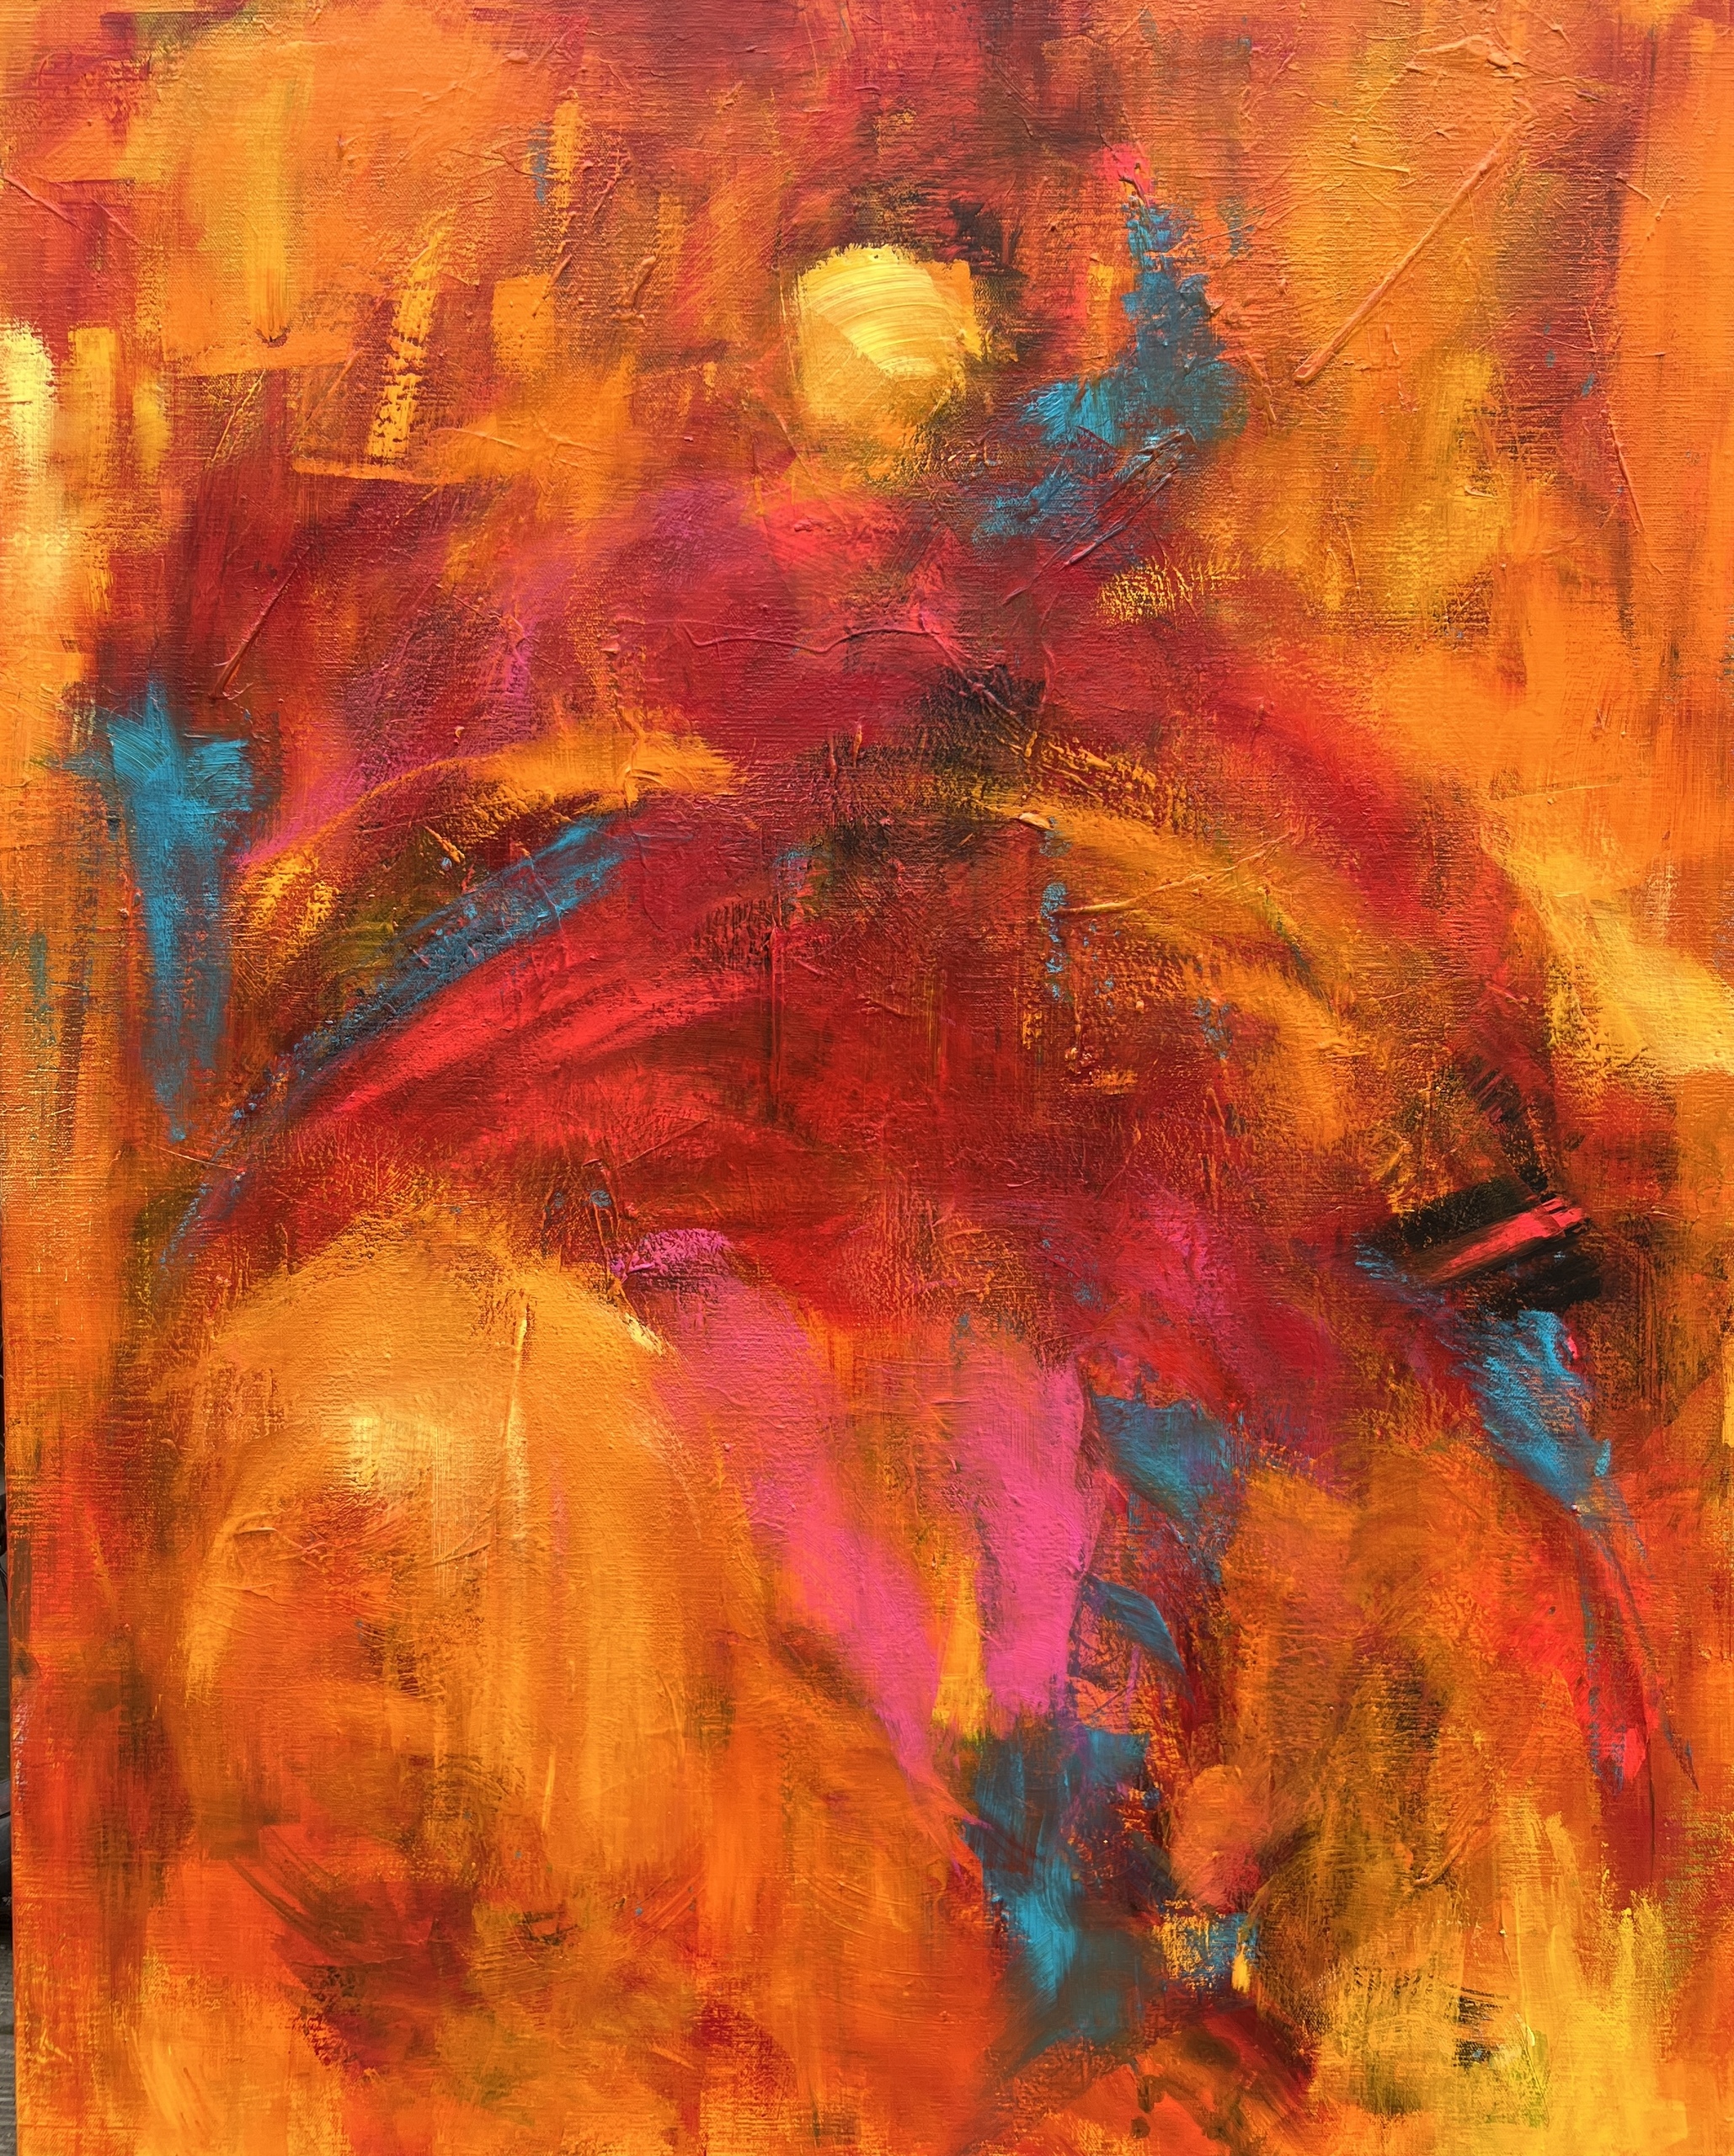 Abstrakt maleri med farverne gul, orange, rød, sort og blå. Gennem ekspressive penselstrøg giver jeg en forestilling om en dansende person - og en stemning af, at blive fanget i lyset.